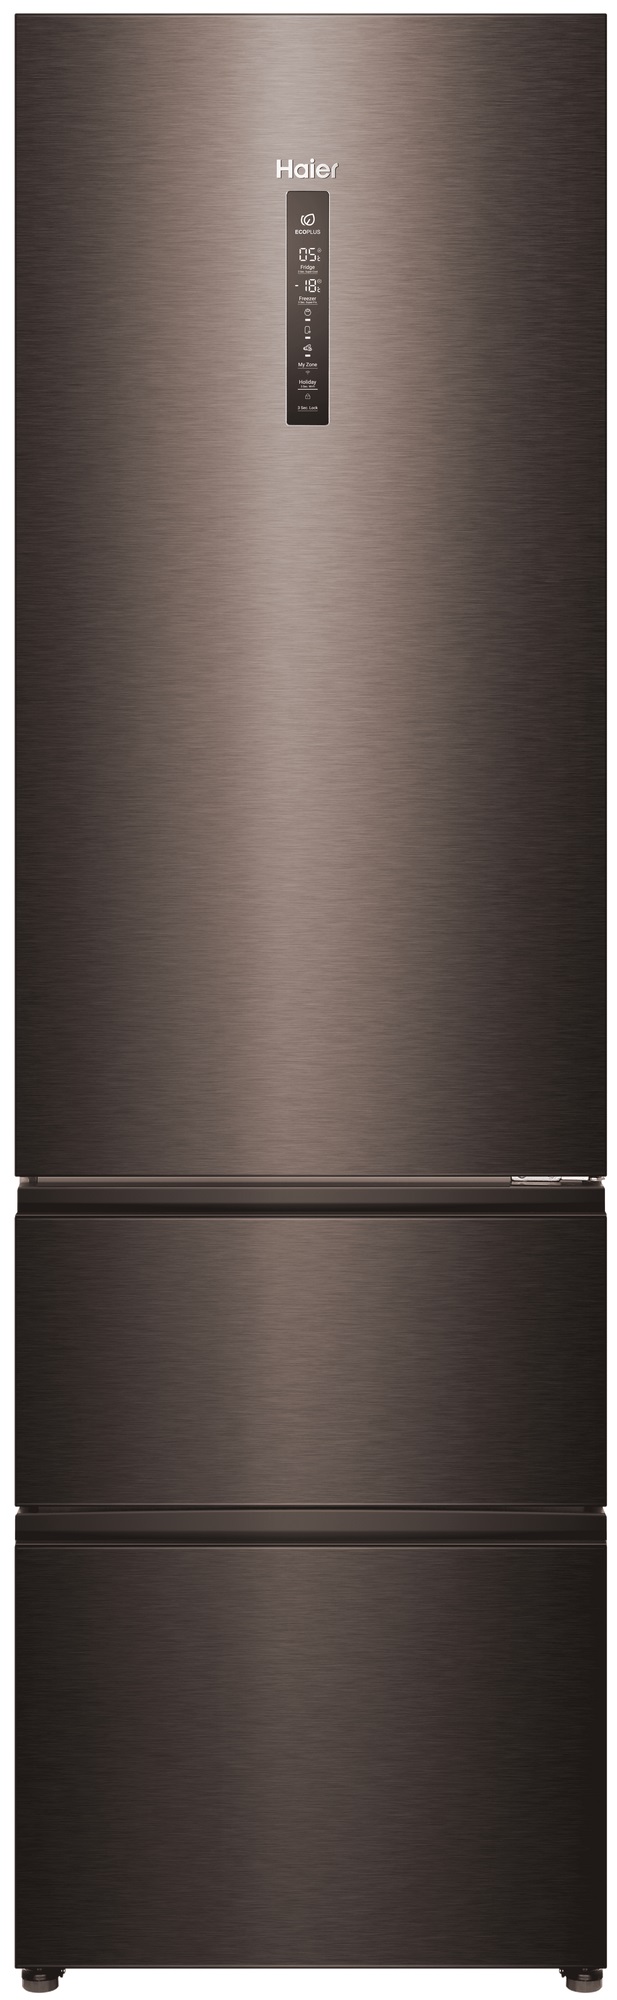 Холодильник Haier A4F739CDBGU1 серый многокамерный холодильник haier htf 508dgs7ru